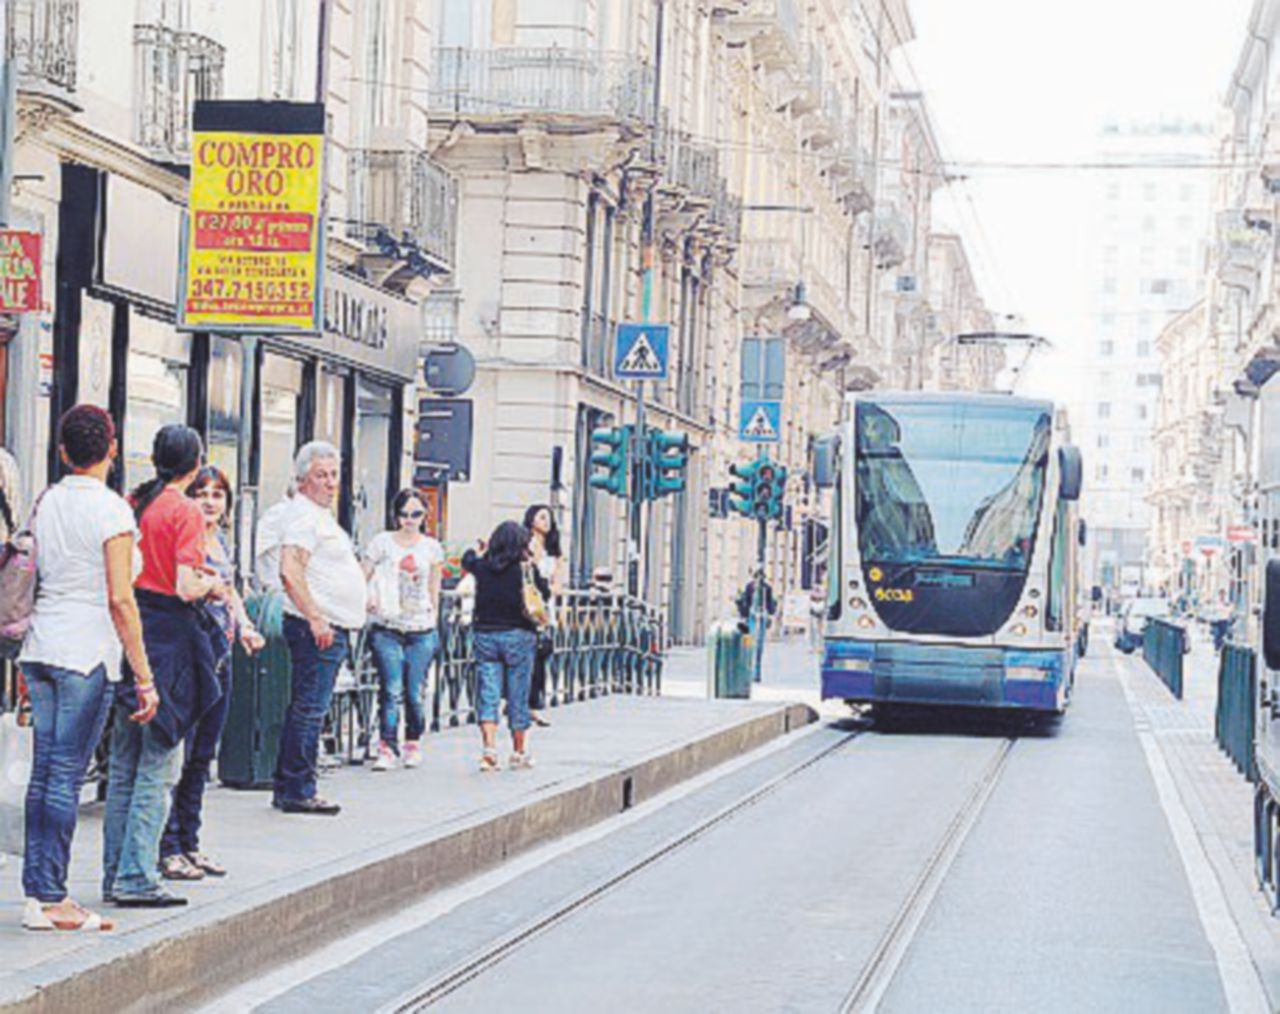 La carrozzina non può essere fissata e il tram non parte: sputi e insulti al disabile marocchino